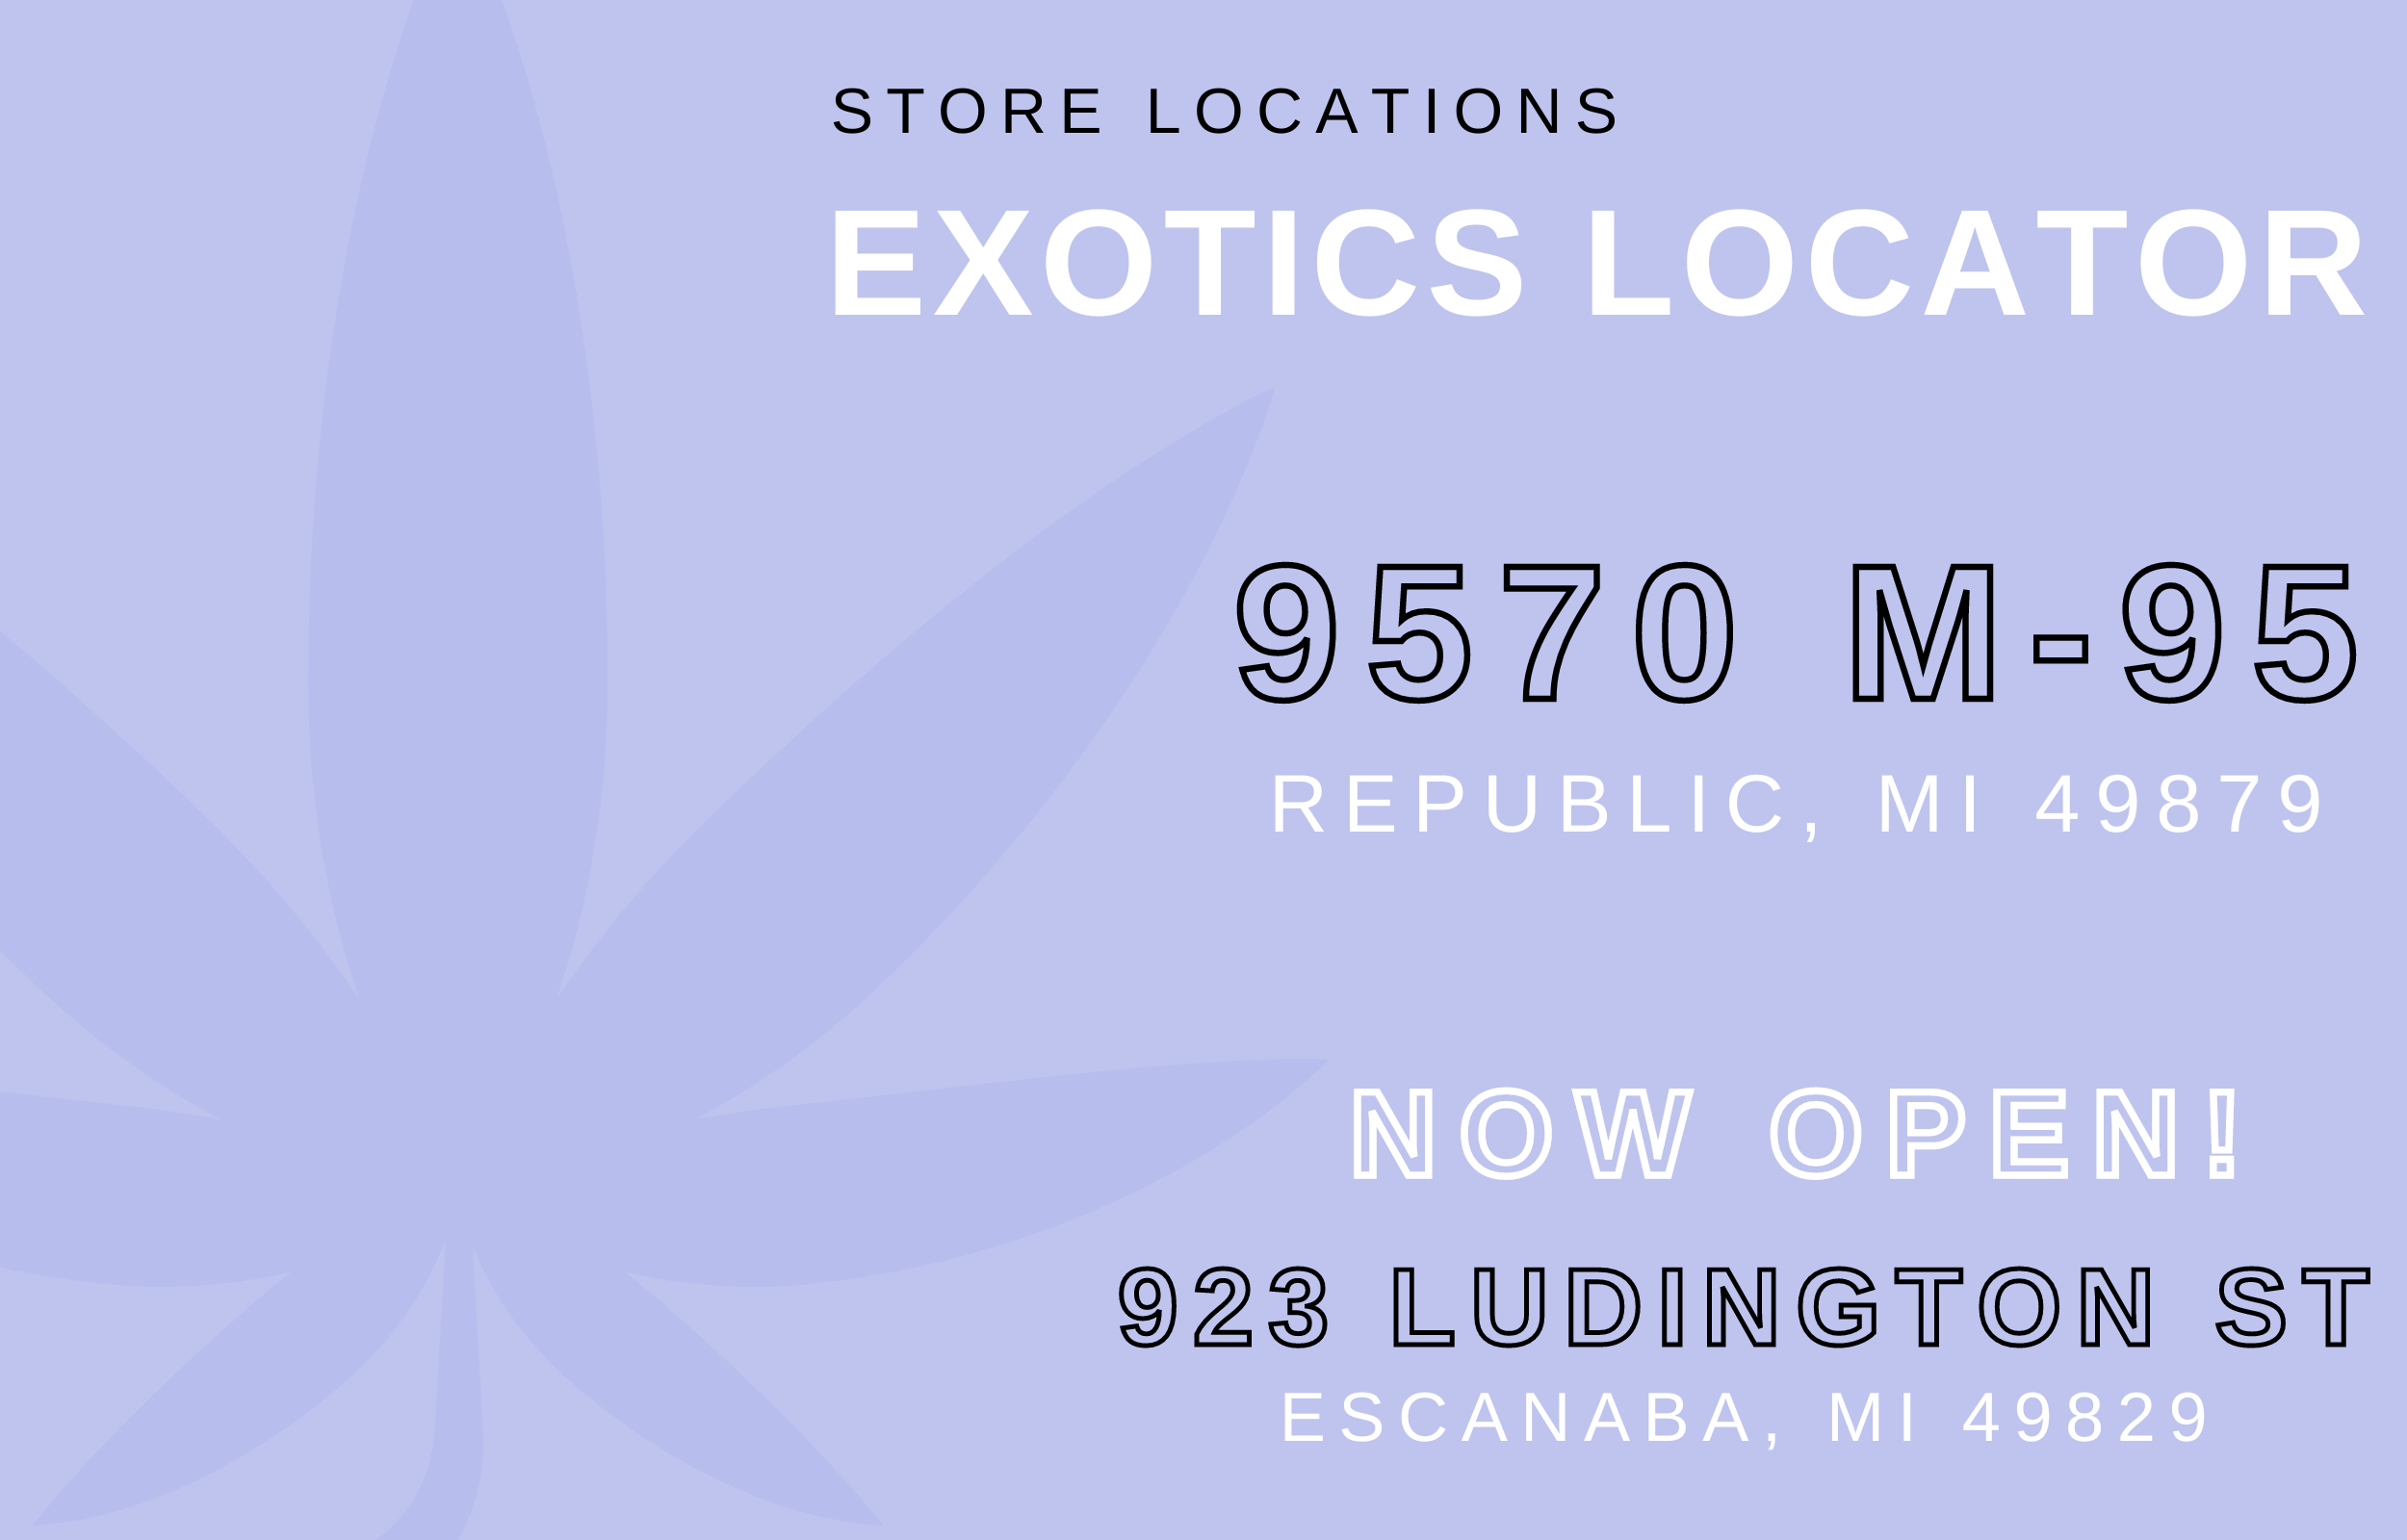 Elevated Exotics Republic + Escanaba Location Information